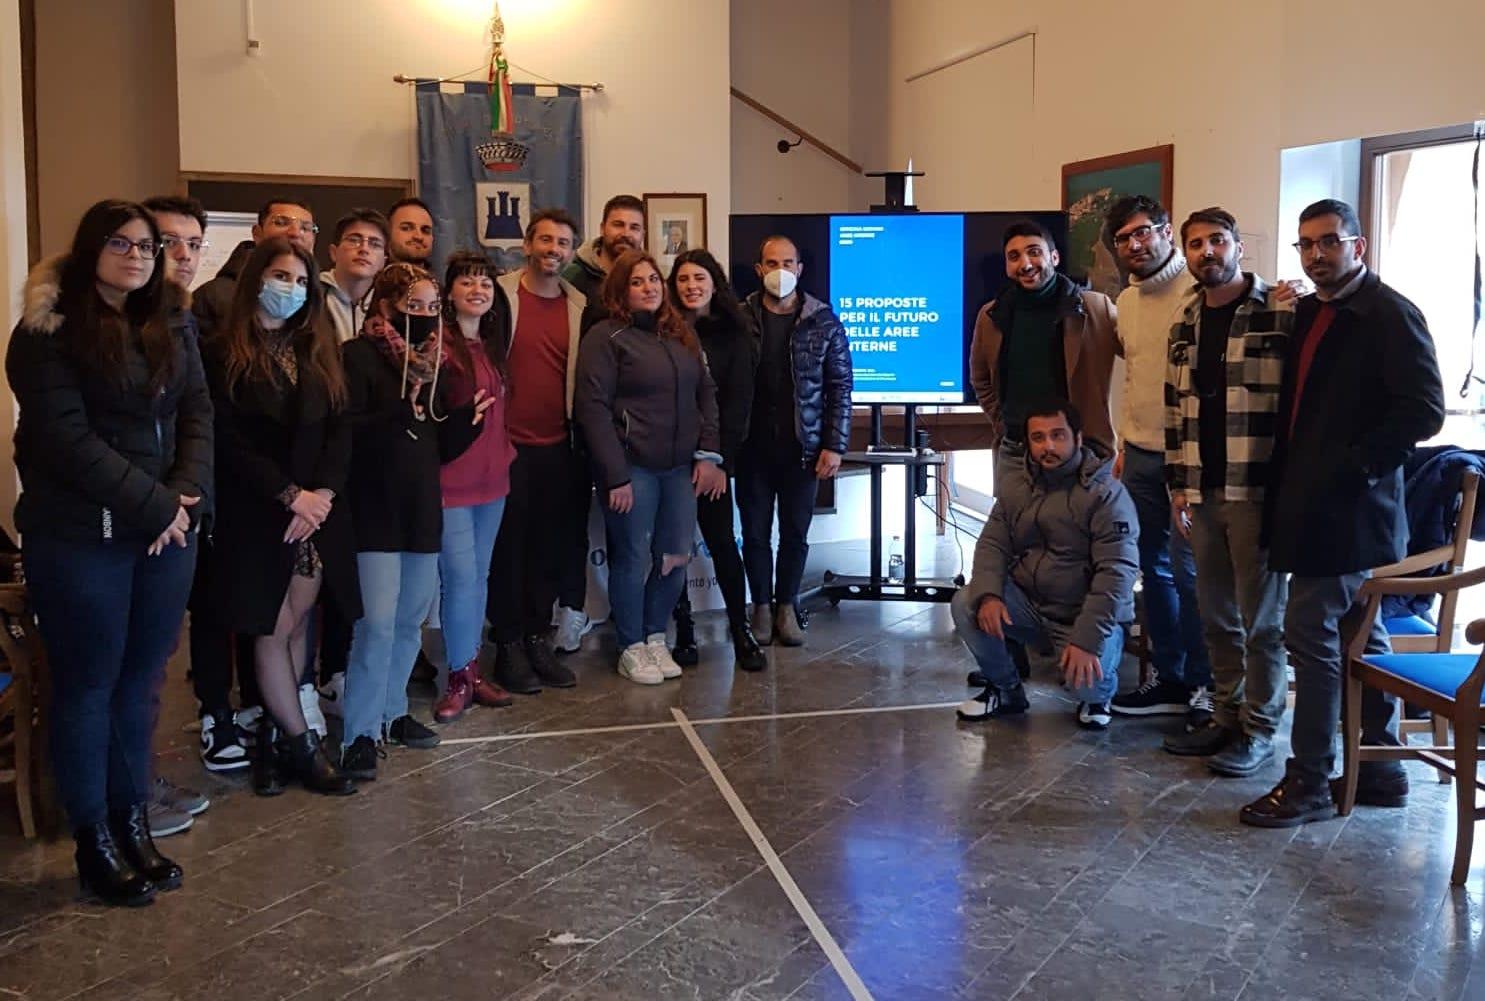 Cilento interno smart e visionario, a Tortorella l’iniziativa per promuovere la cittadinanza attiva dei giovani